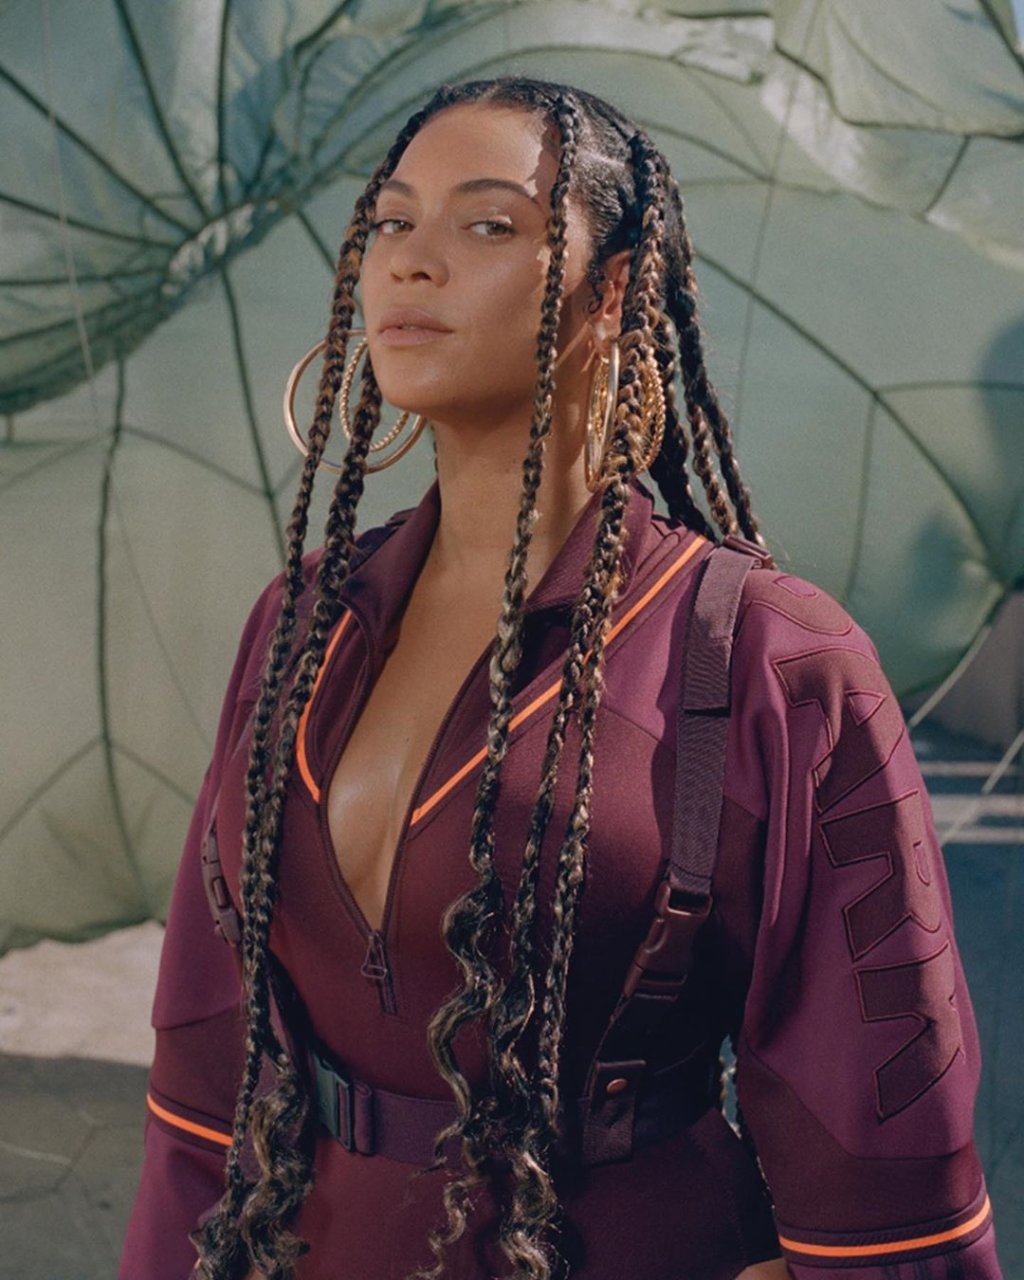 Beyoncé usando um casaco vinho com detalhes em laranja e brinco de argolas. Ela está com a cabeça levemente inclinada para trás e com expressão facial séria.